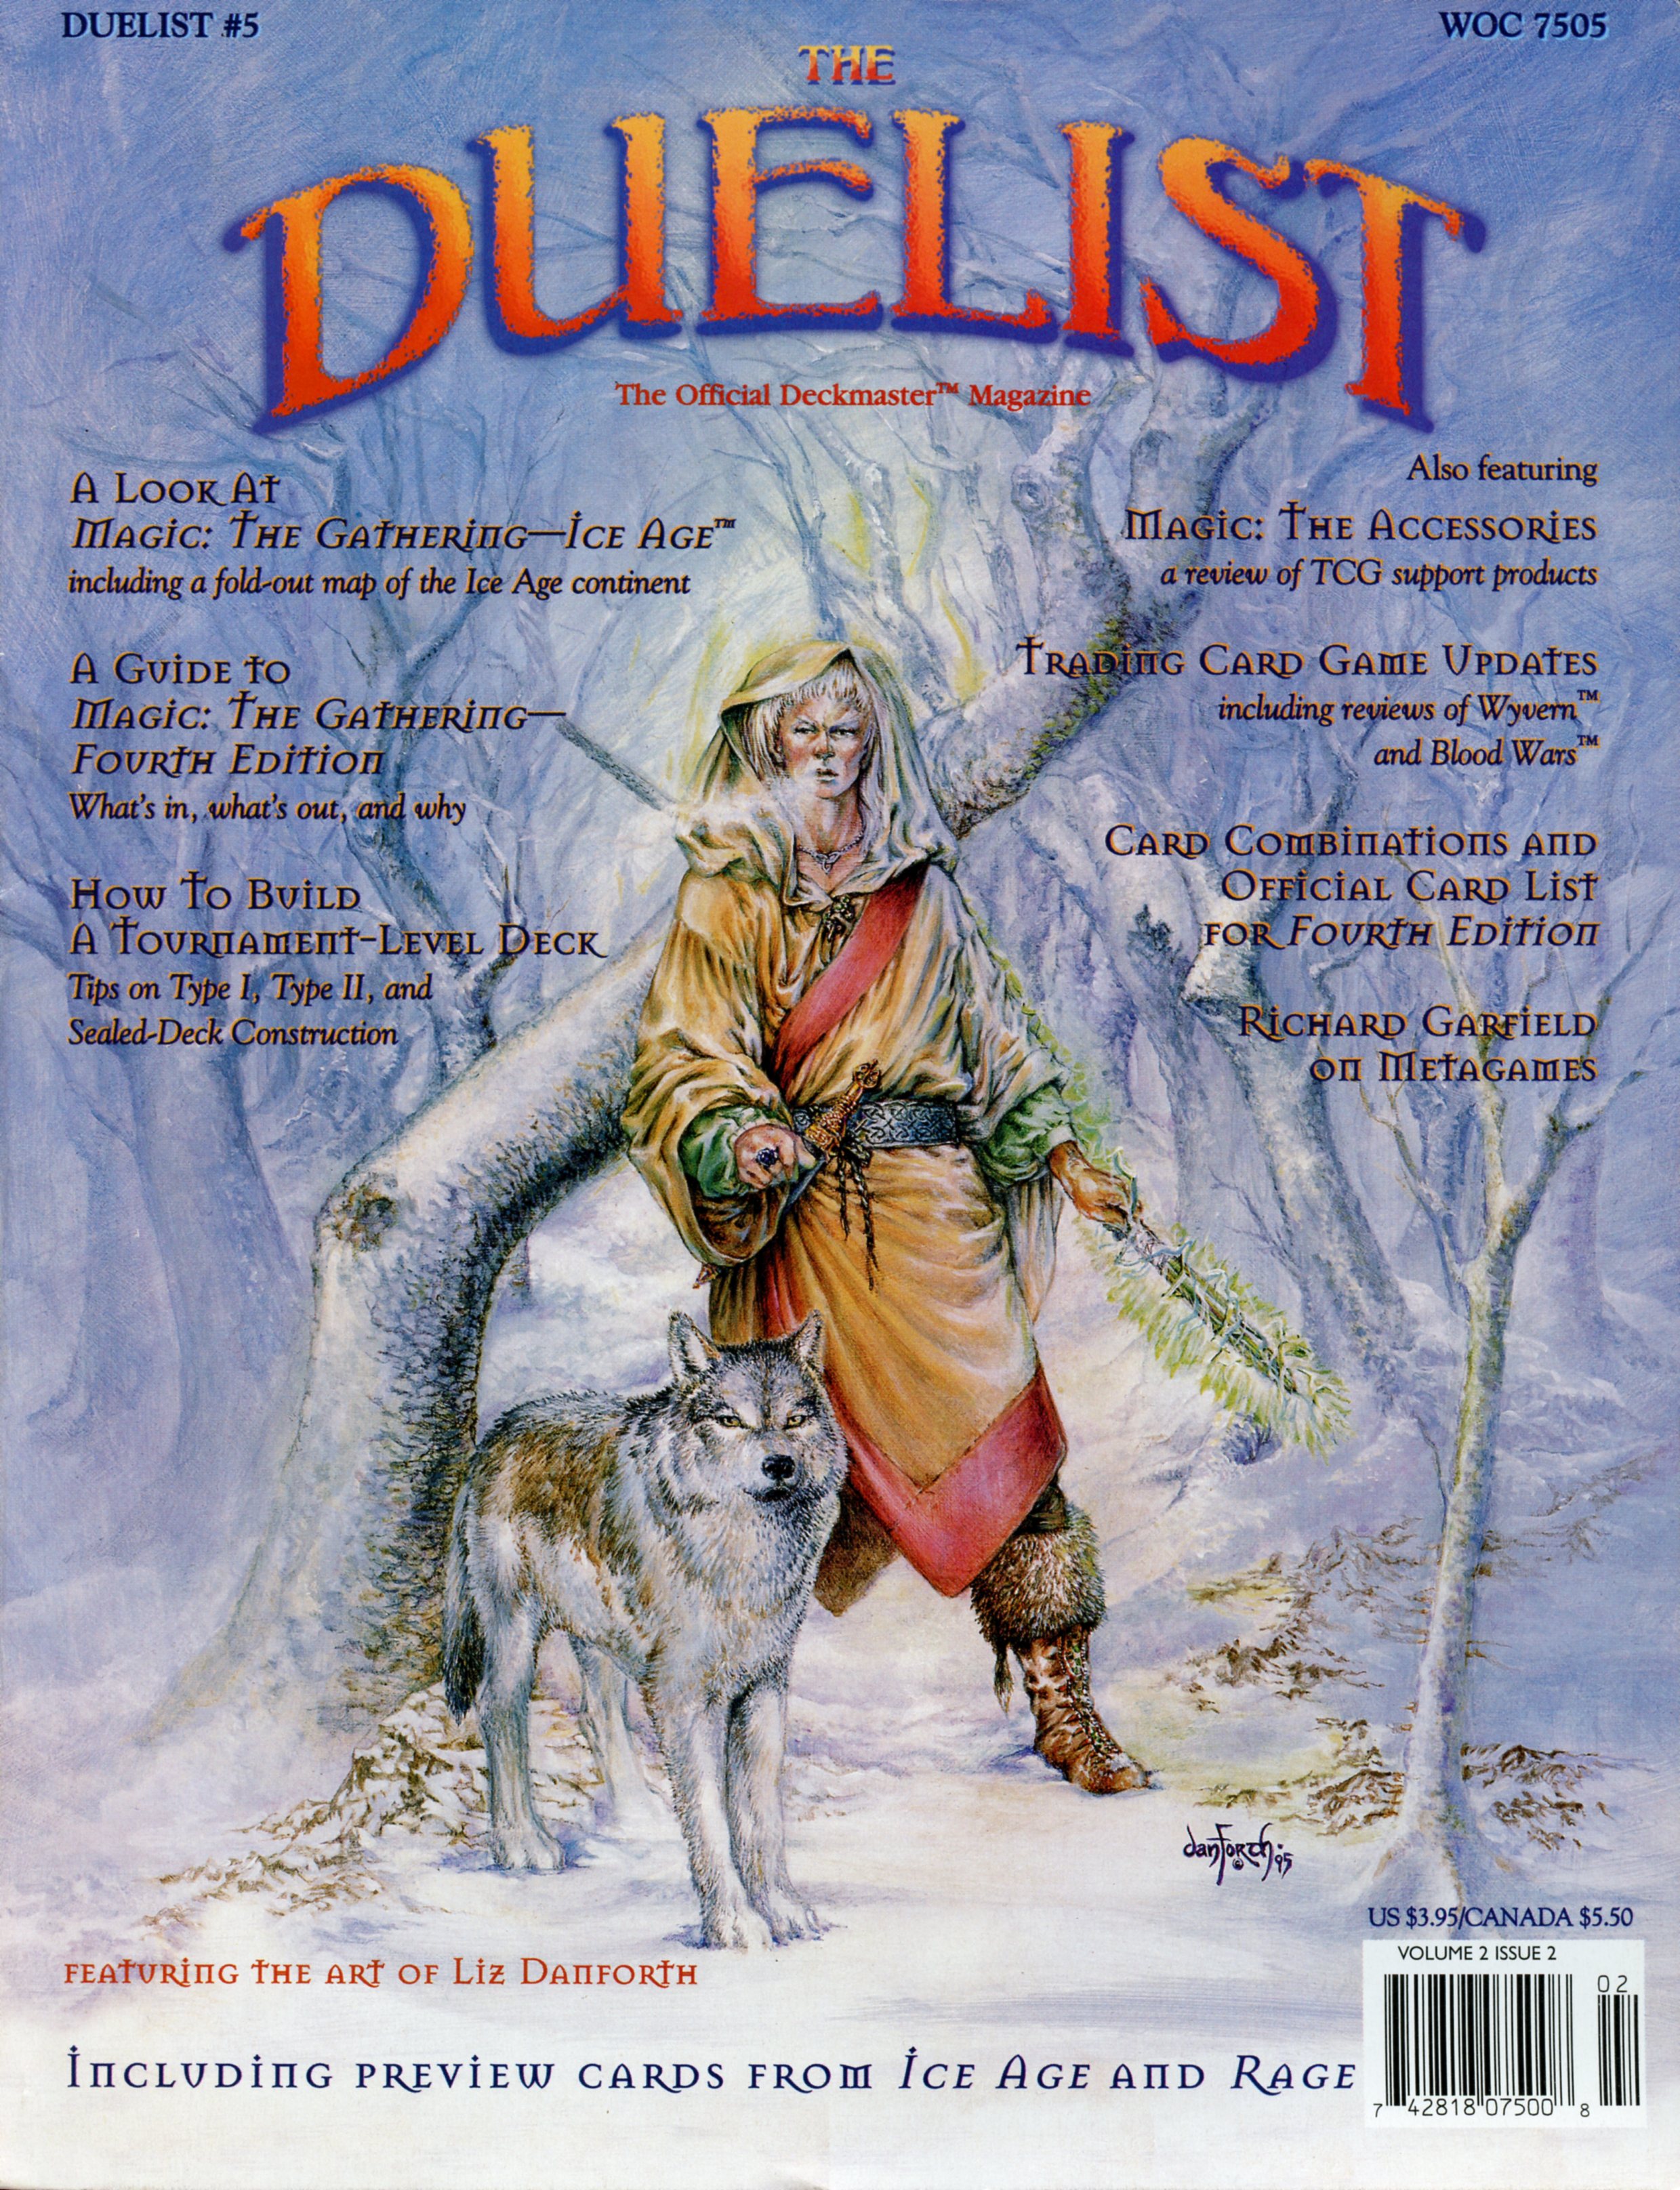 The Duelist #5, June 1995